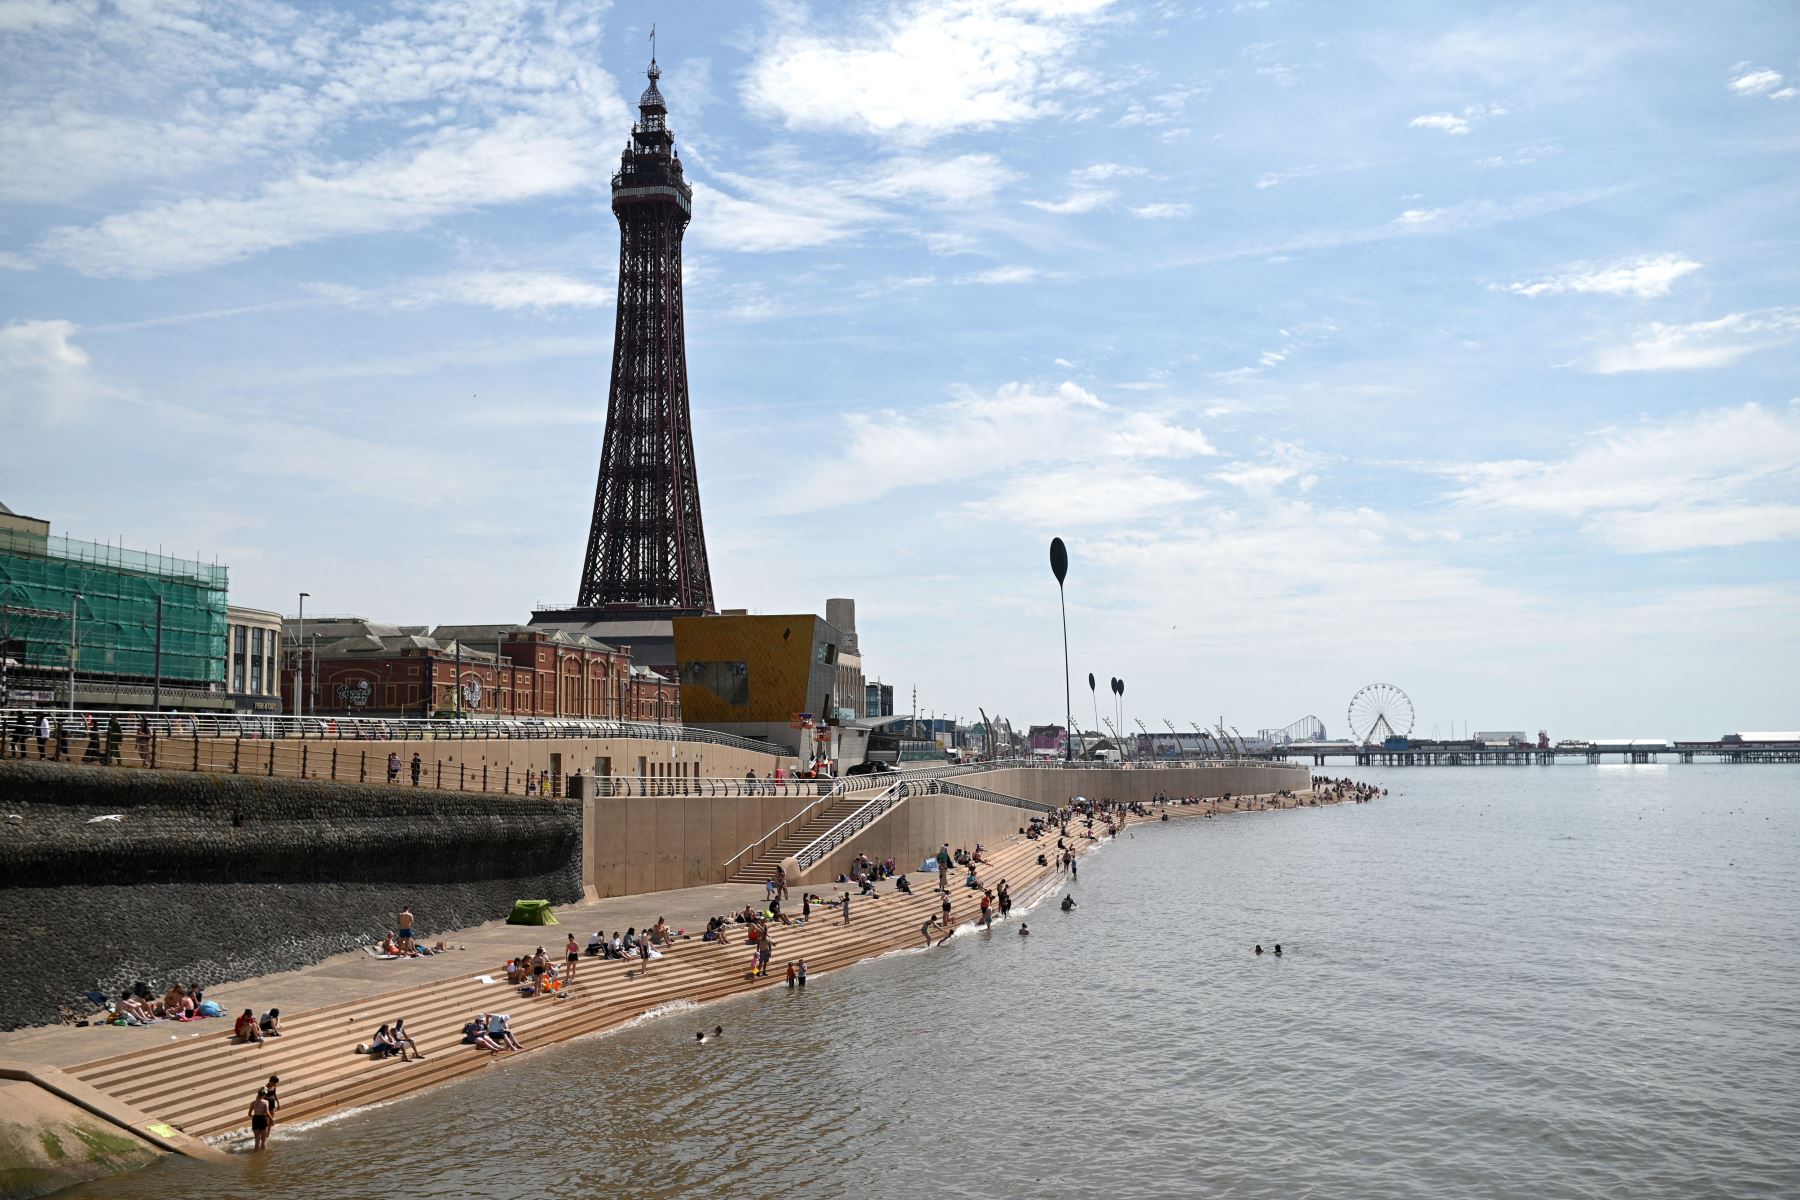 Los bañistas disfrutan del sol y el mar en Blackpool, noroeste de Inglaterra. La agencia meteorológica del Reino Unido emitió el viernes su primera advertencia "roja" por calor excepcional, pronosticando niveles récord de 40 grados centígrados la próxima semana.
Foto: AFP